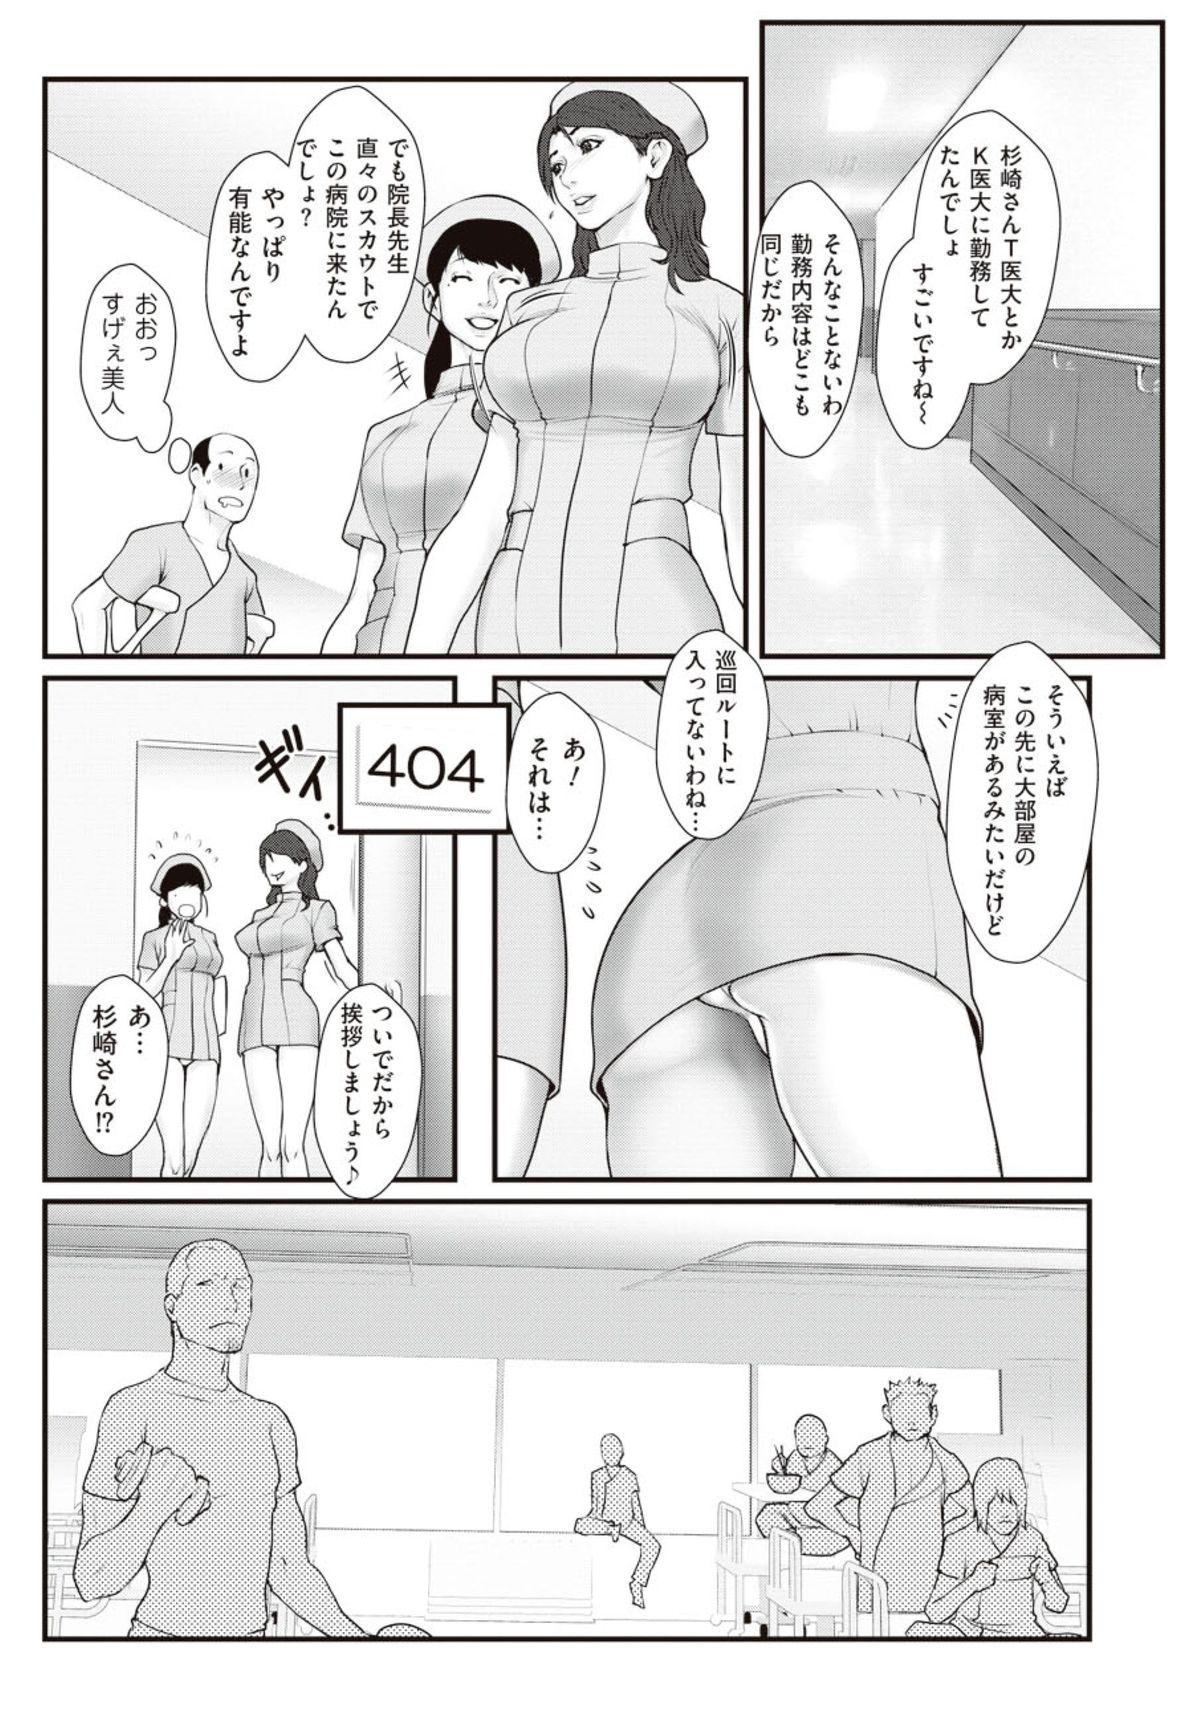 Stepbro Shiiku byoto 24 Chap 1-5 + Bangai Hen Uncensored - Page 6